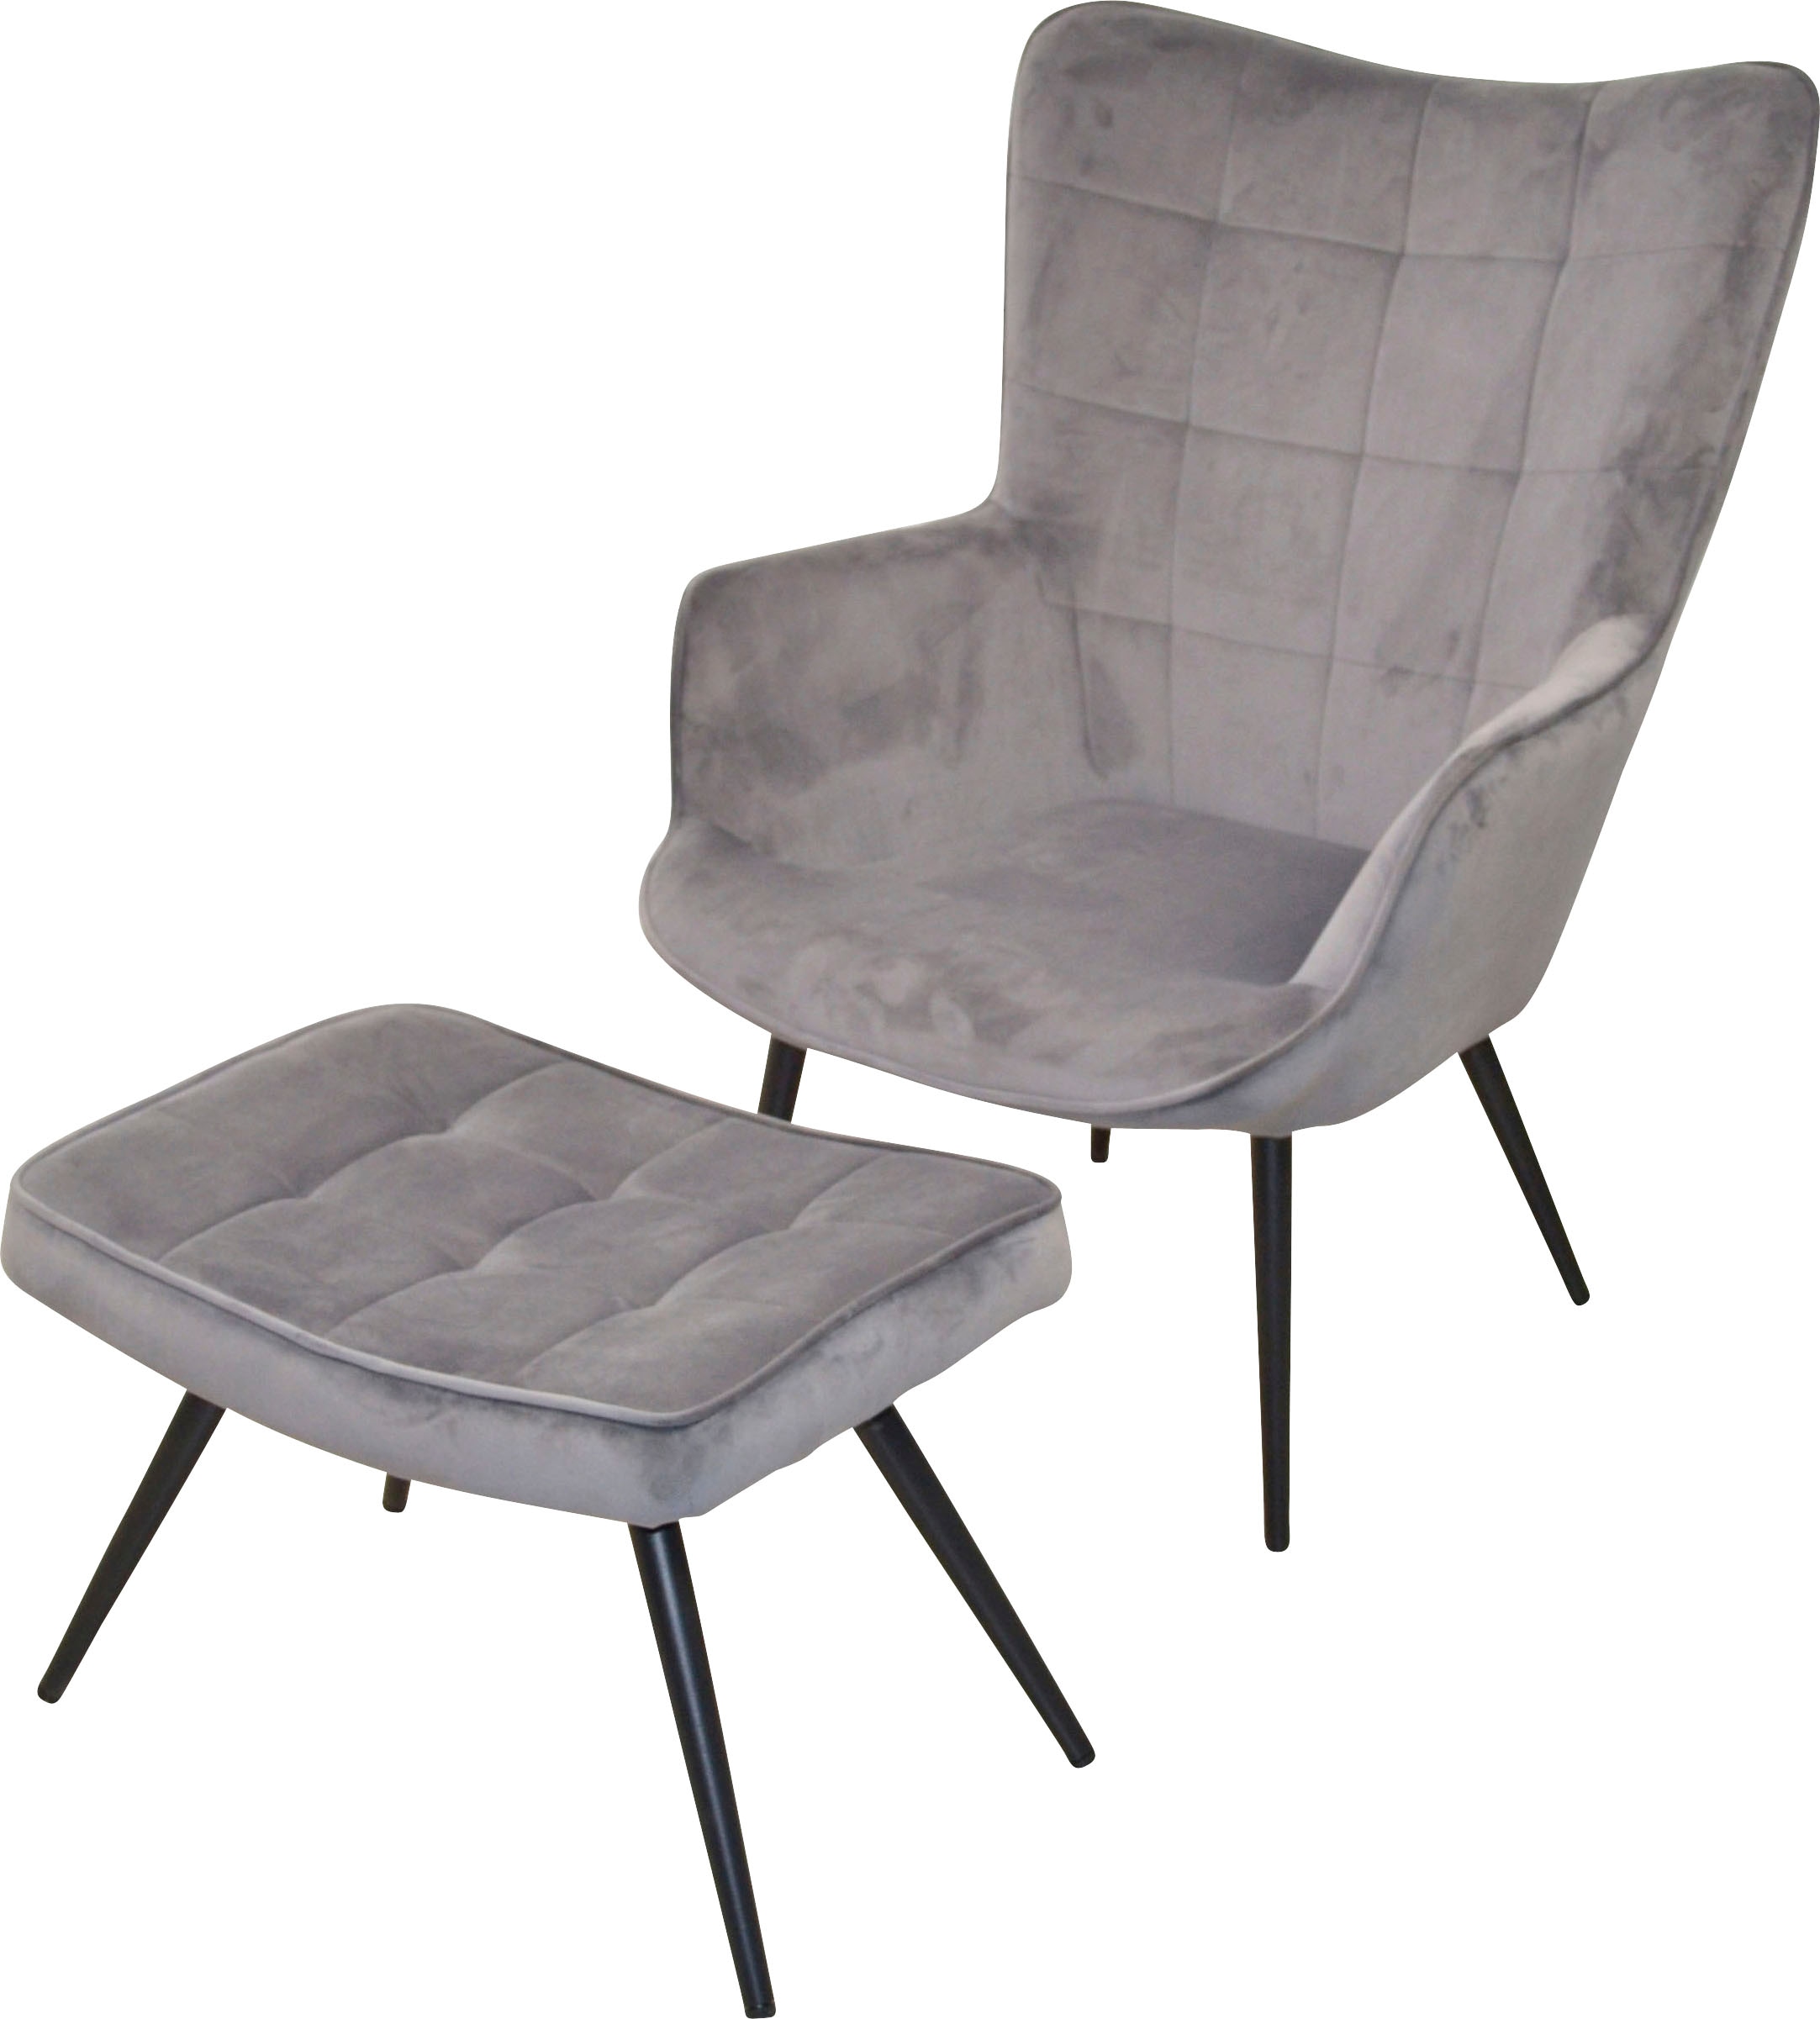 AND Stahlrohr, MORE mit Sessel bequem lackiert LIVING Polstersessel Beinen »Jaro«, aus HOFMANN kaufen schwarz